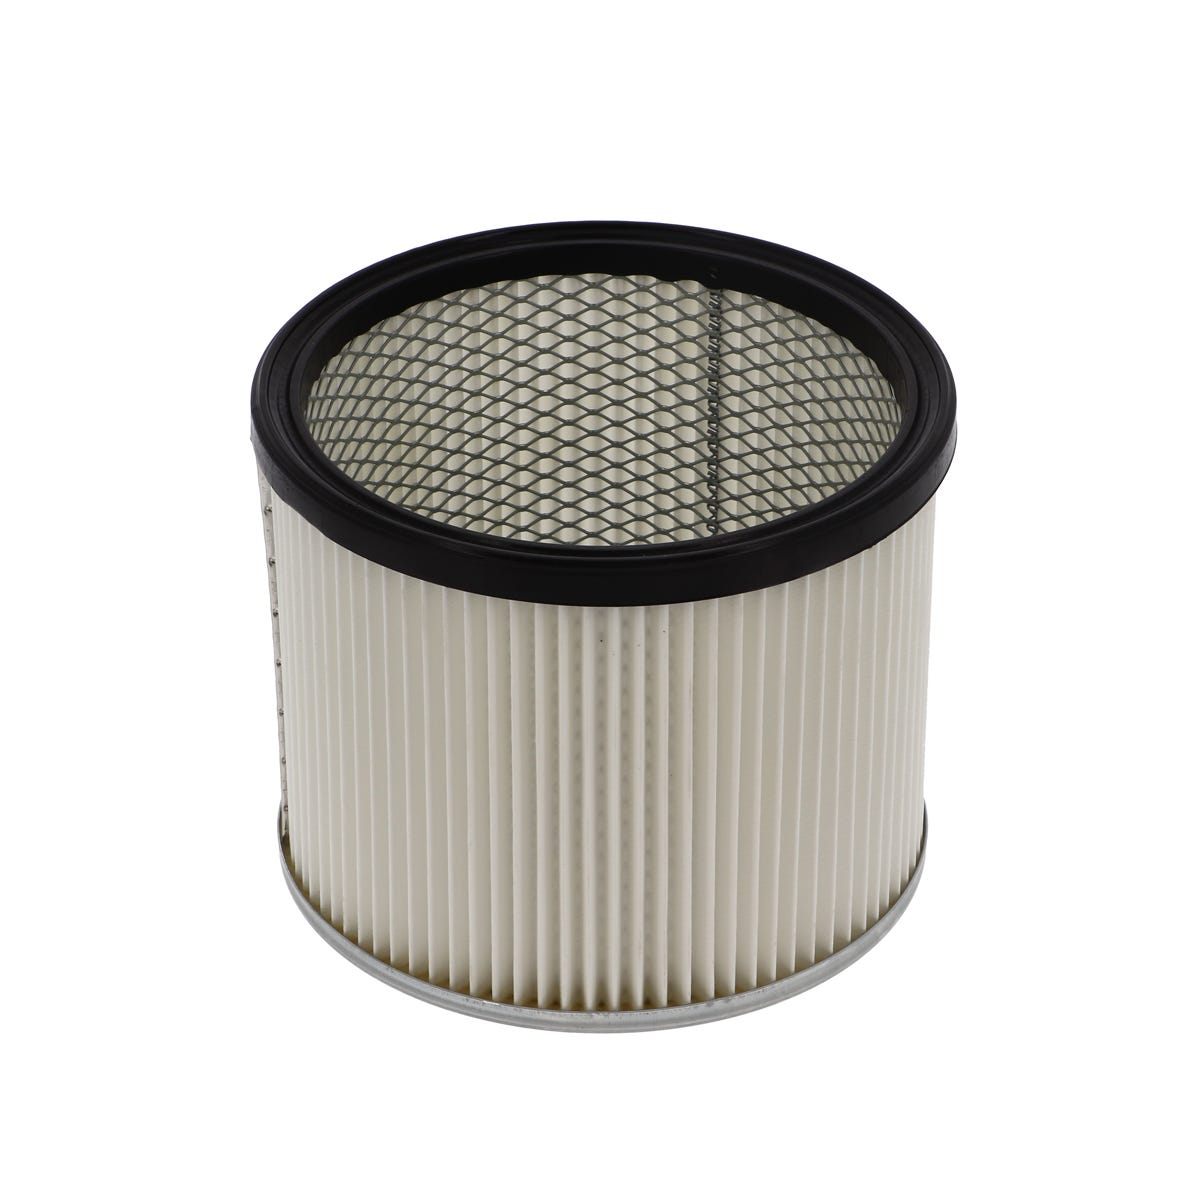 Filtre cartouche HEPA pour aspirateurs RENSON compatible avec modèles P211 /P211-1/P371/P371-1/P371-2 0